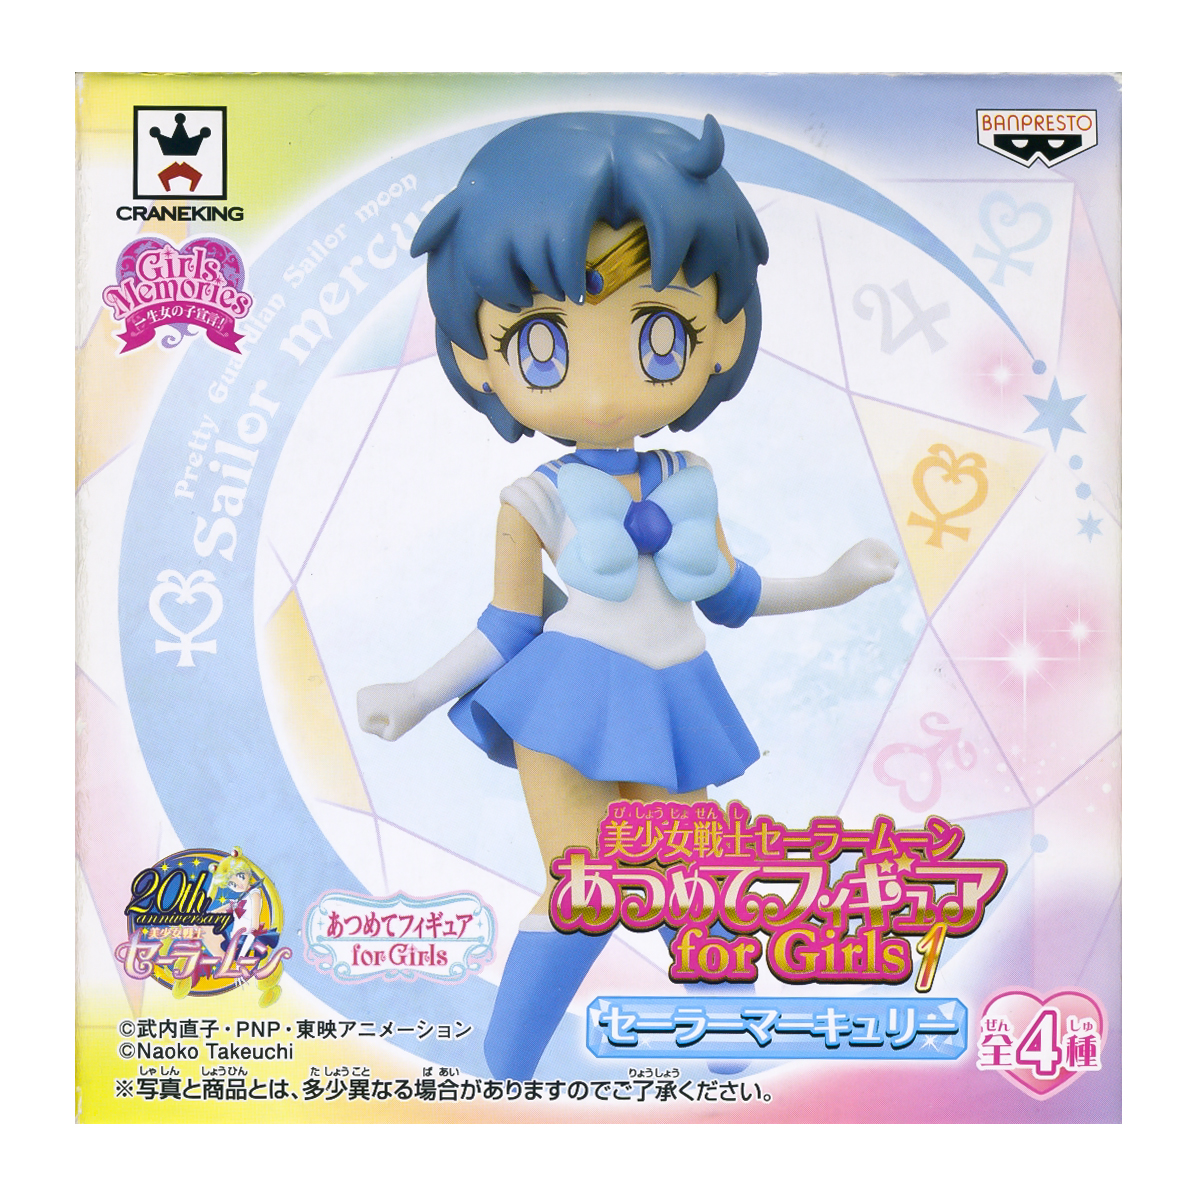 Sailor Mercury Atsumete Trading Figure Banpresto Anime Statue Doll 20th Anniversary Special